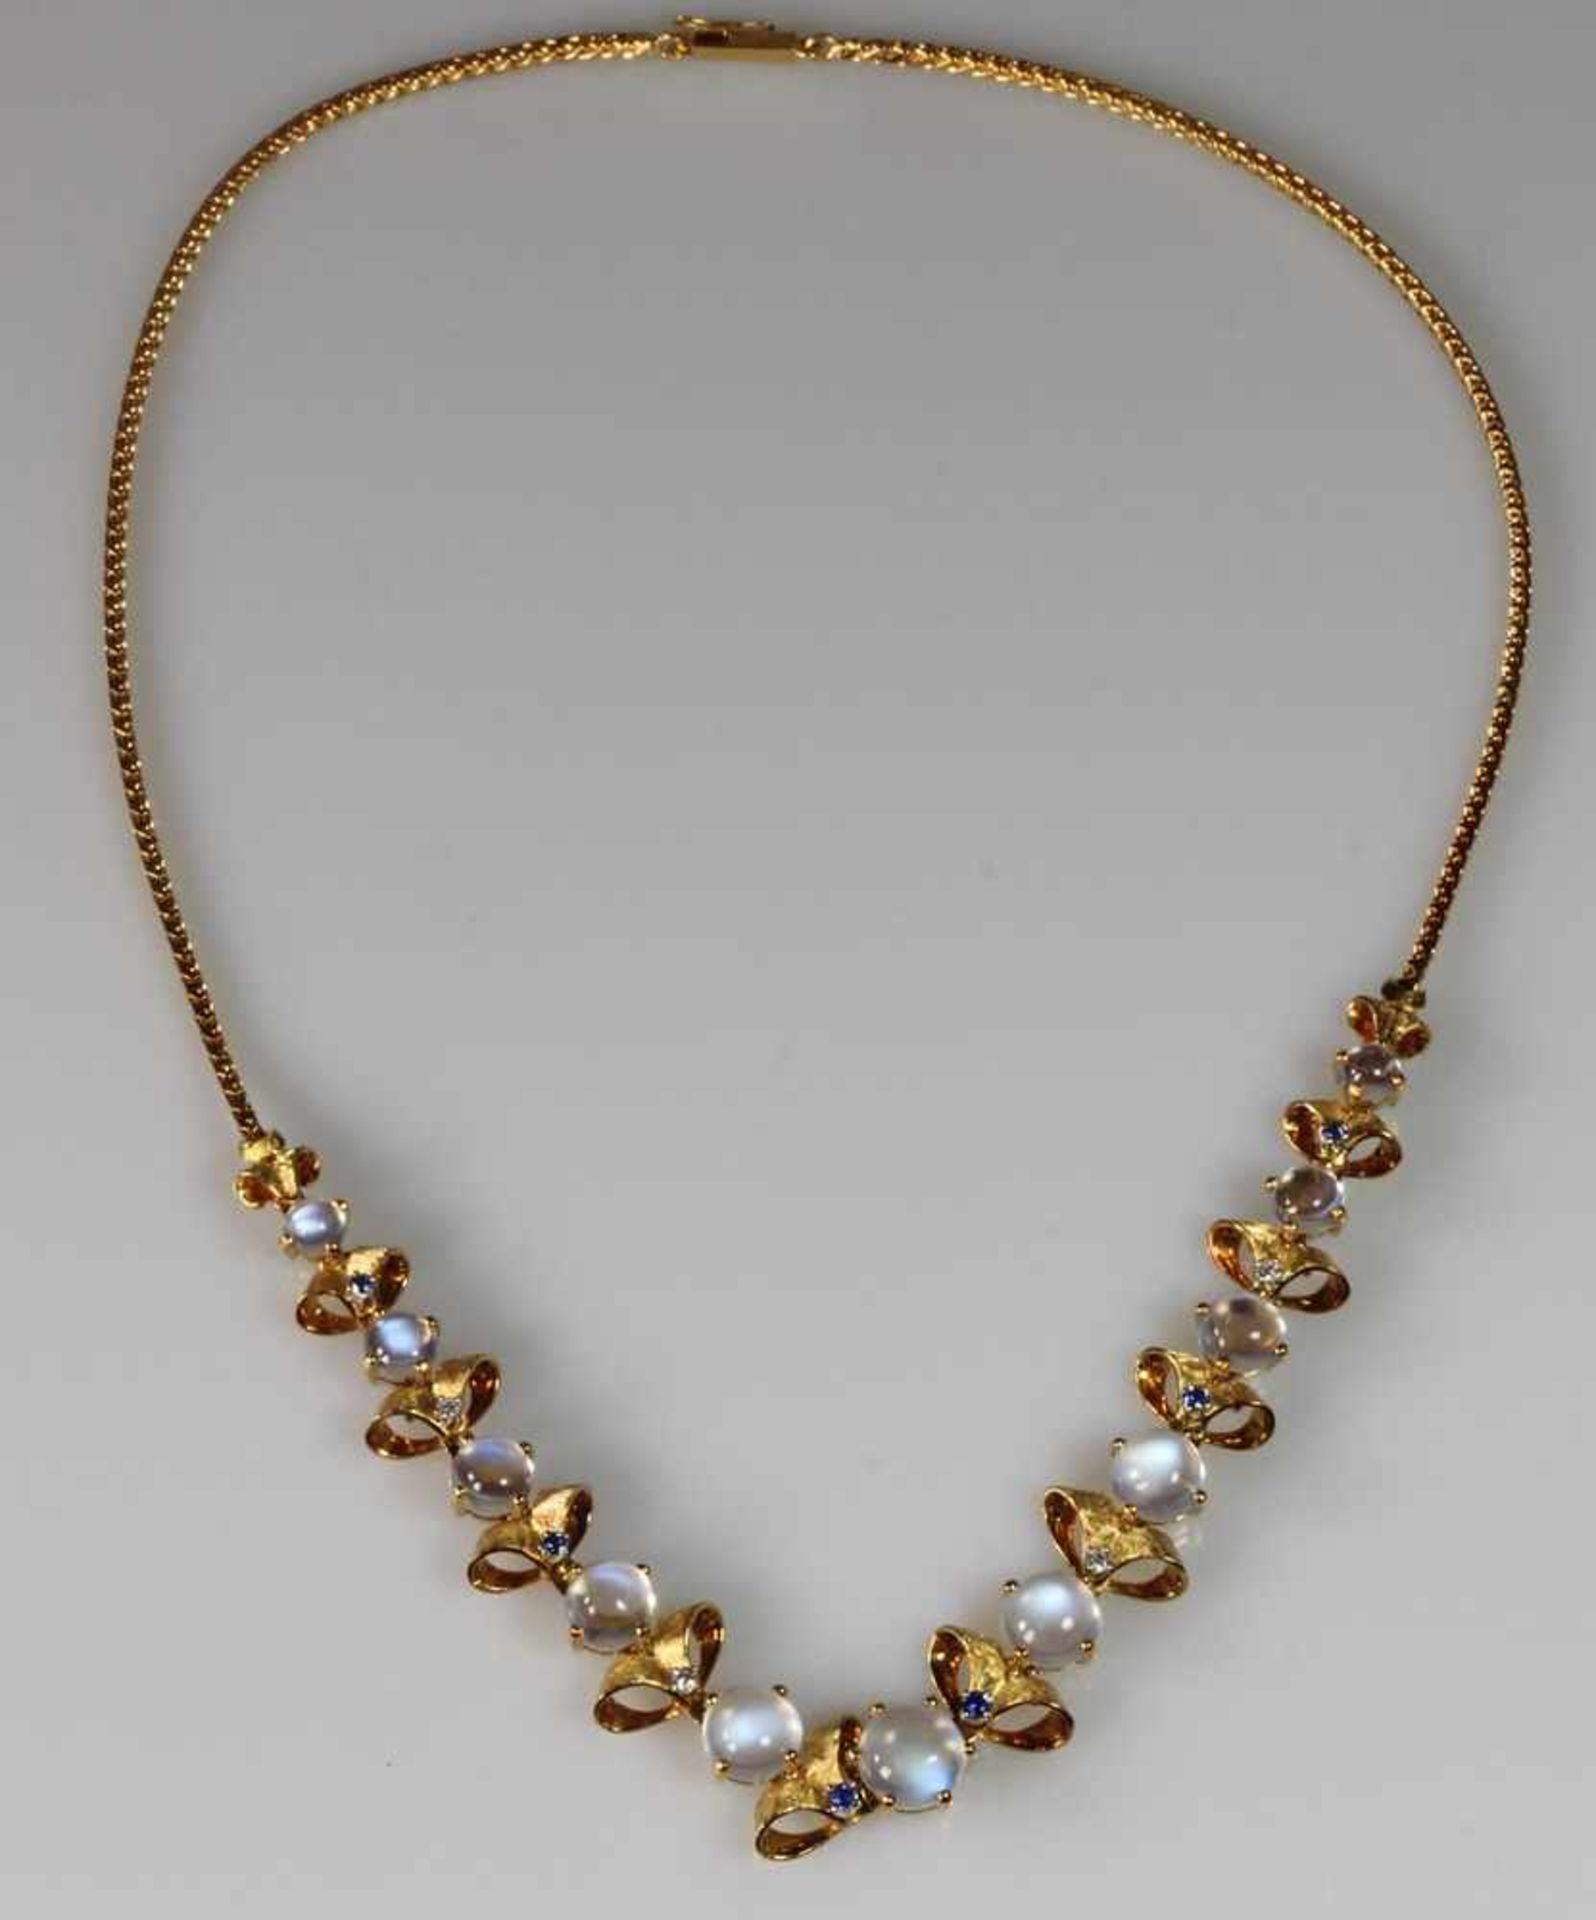 Halskette, GG 750, 11 runde Mondstein-Cabochons ø 4.7 - 8.4 mm, 6 runde facettierte Saphire, 4